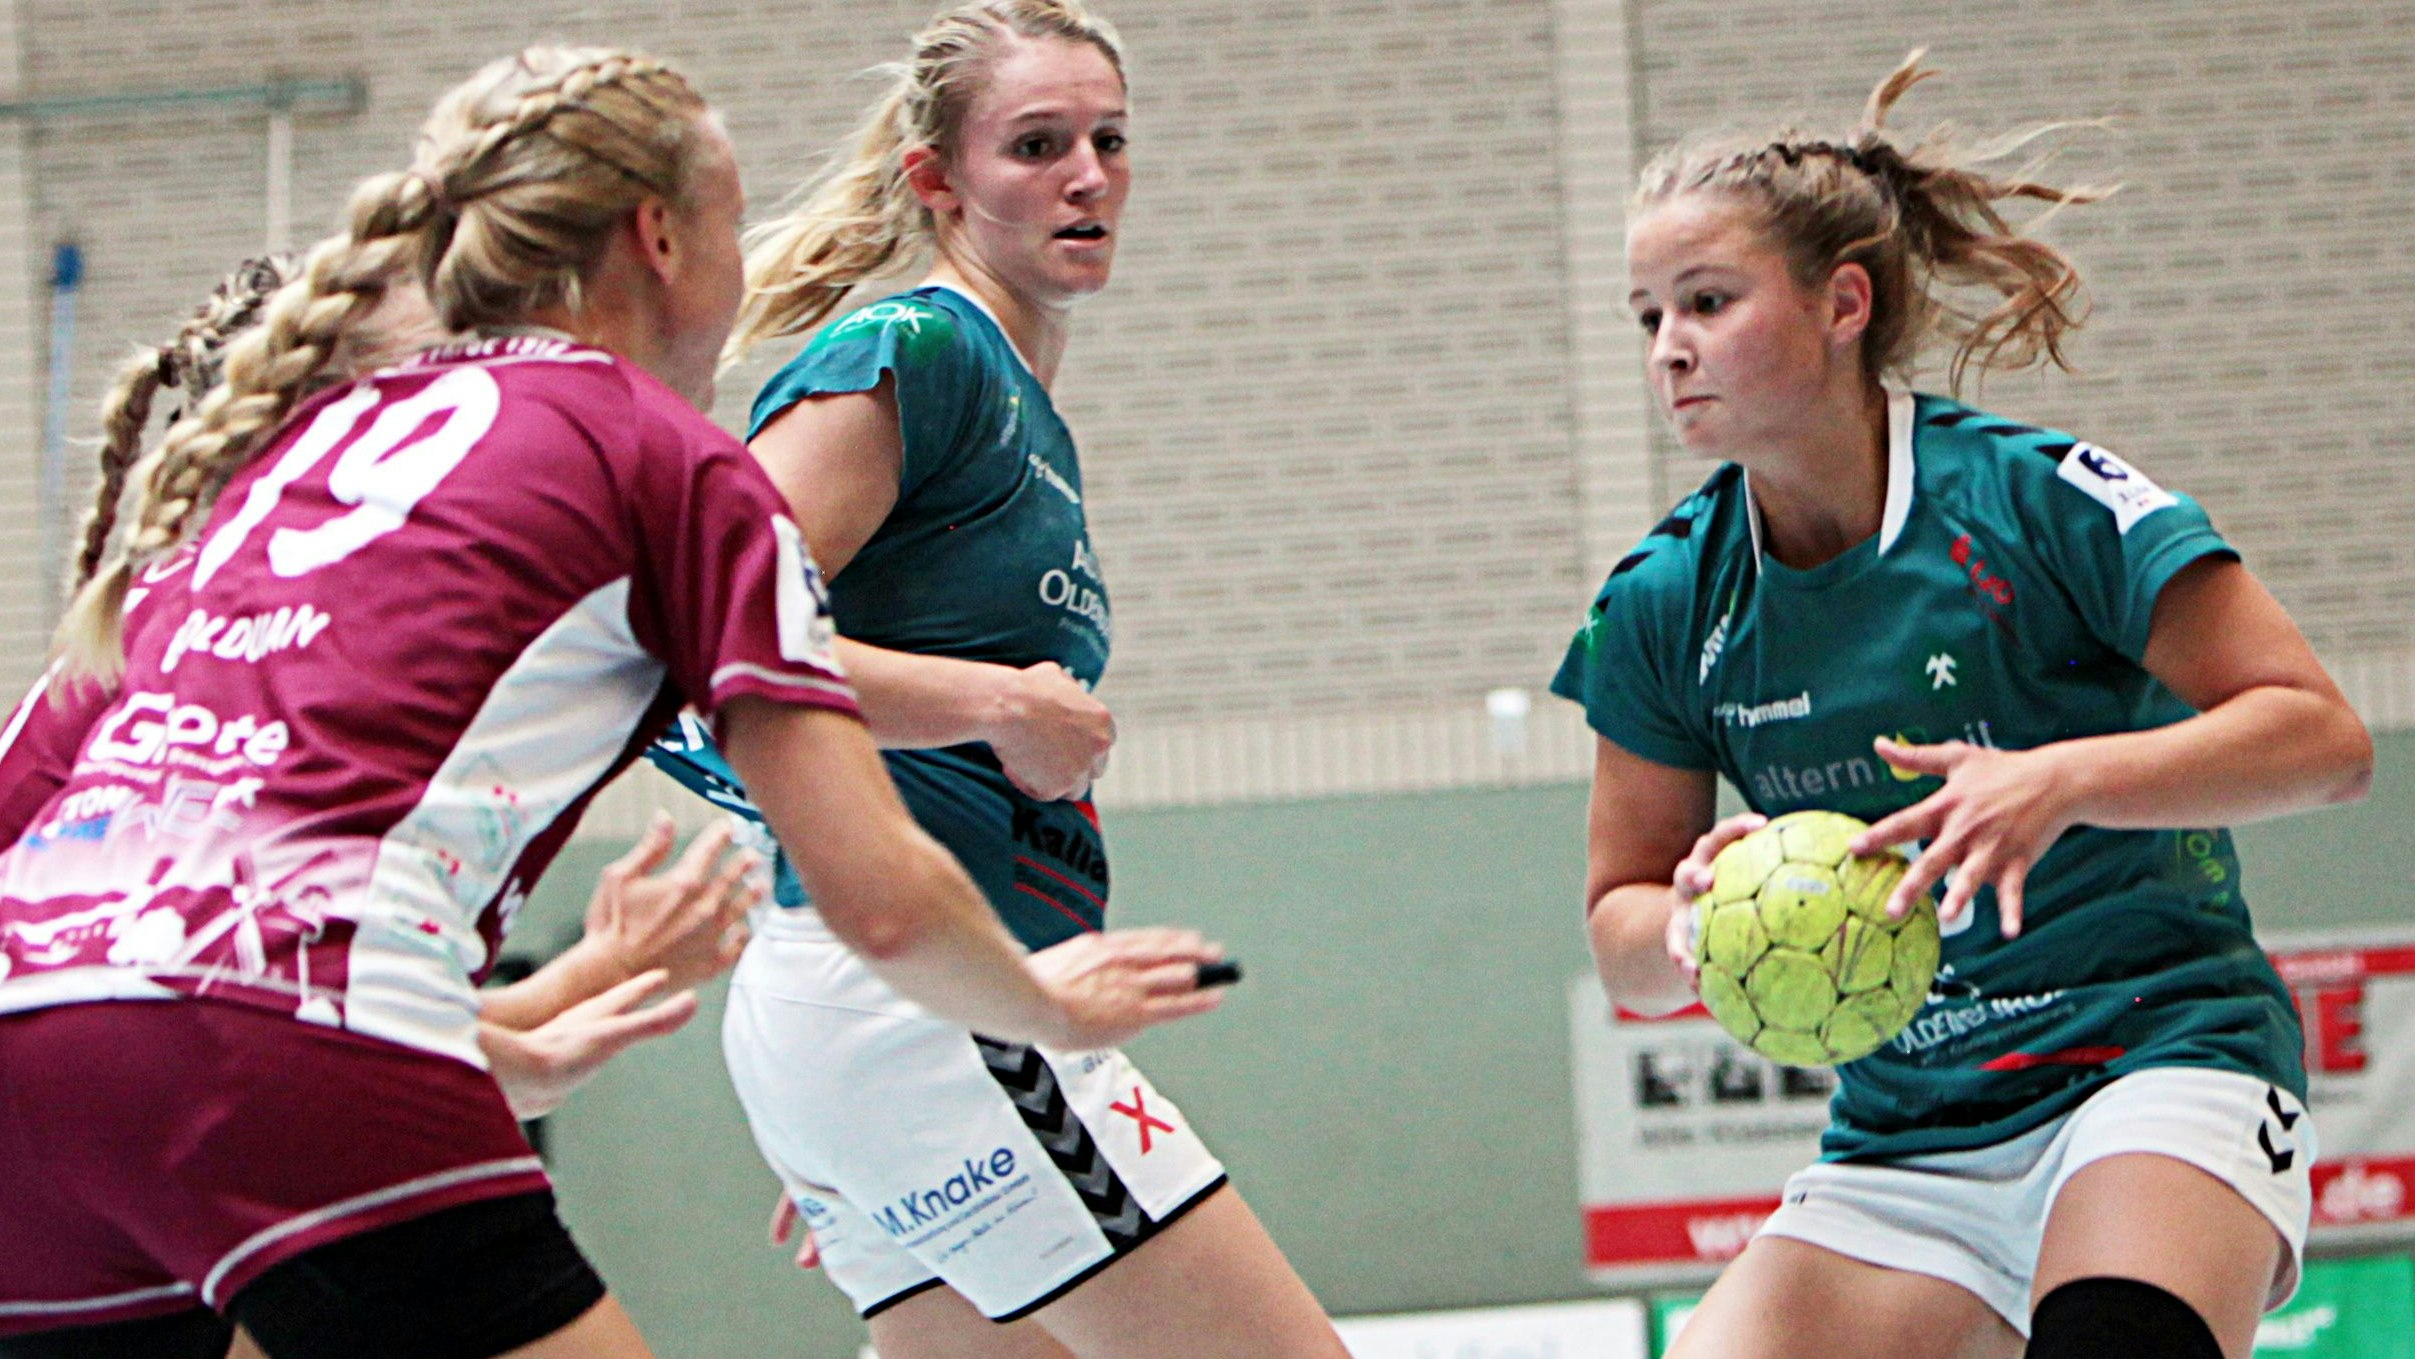 Eine echte Verstärkung: Die junge Maya Janßen (rechts) machte ein gutes Spiel. In der Mitte Svenja Ruhöfer. Foto: Schikora